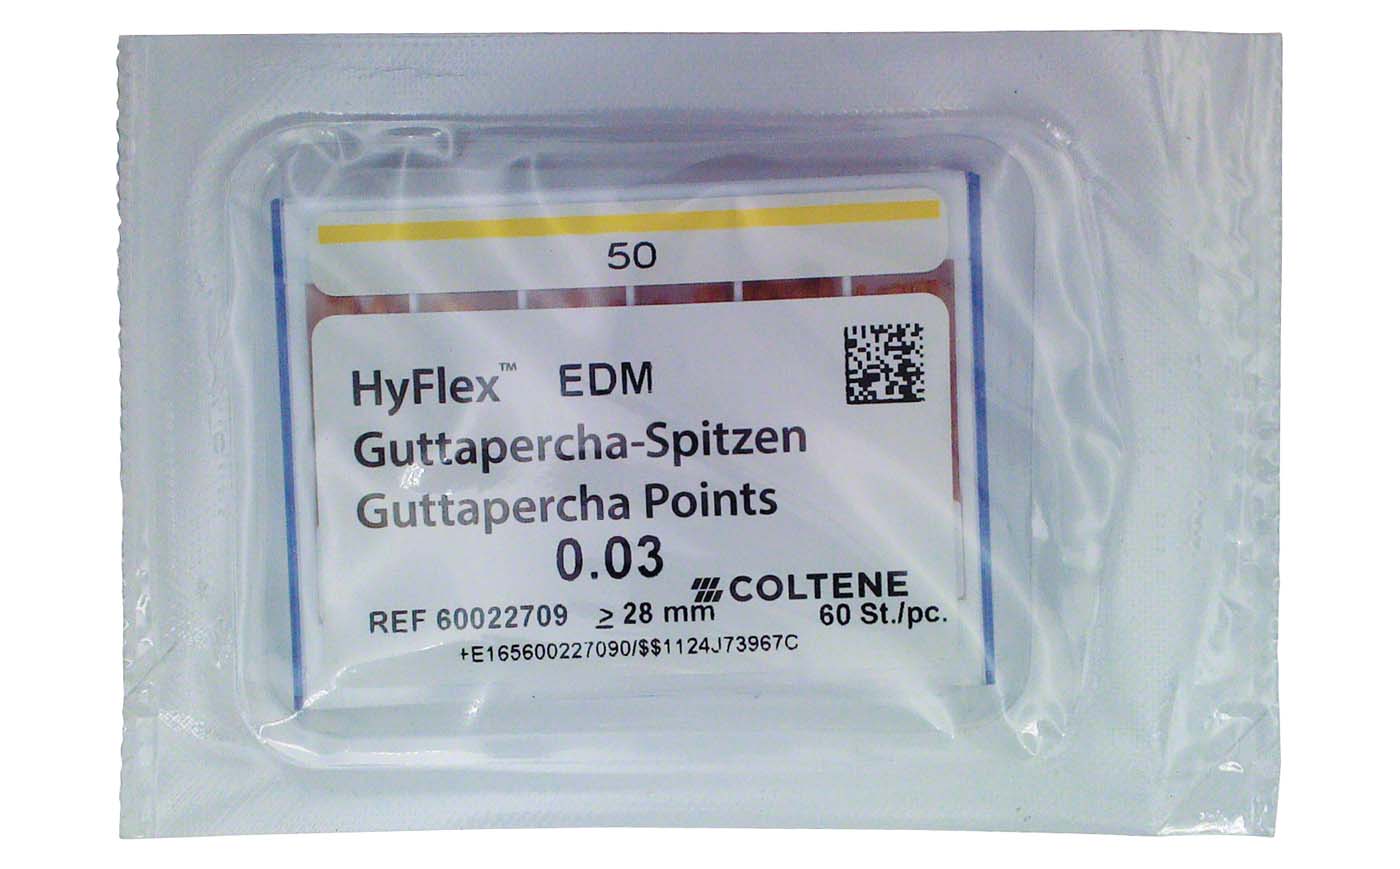 HyFlex™ EDM Guttapercha-Spitzen COLTENE